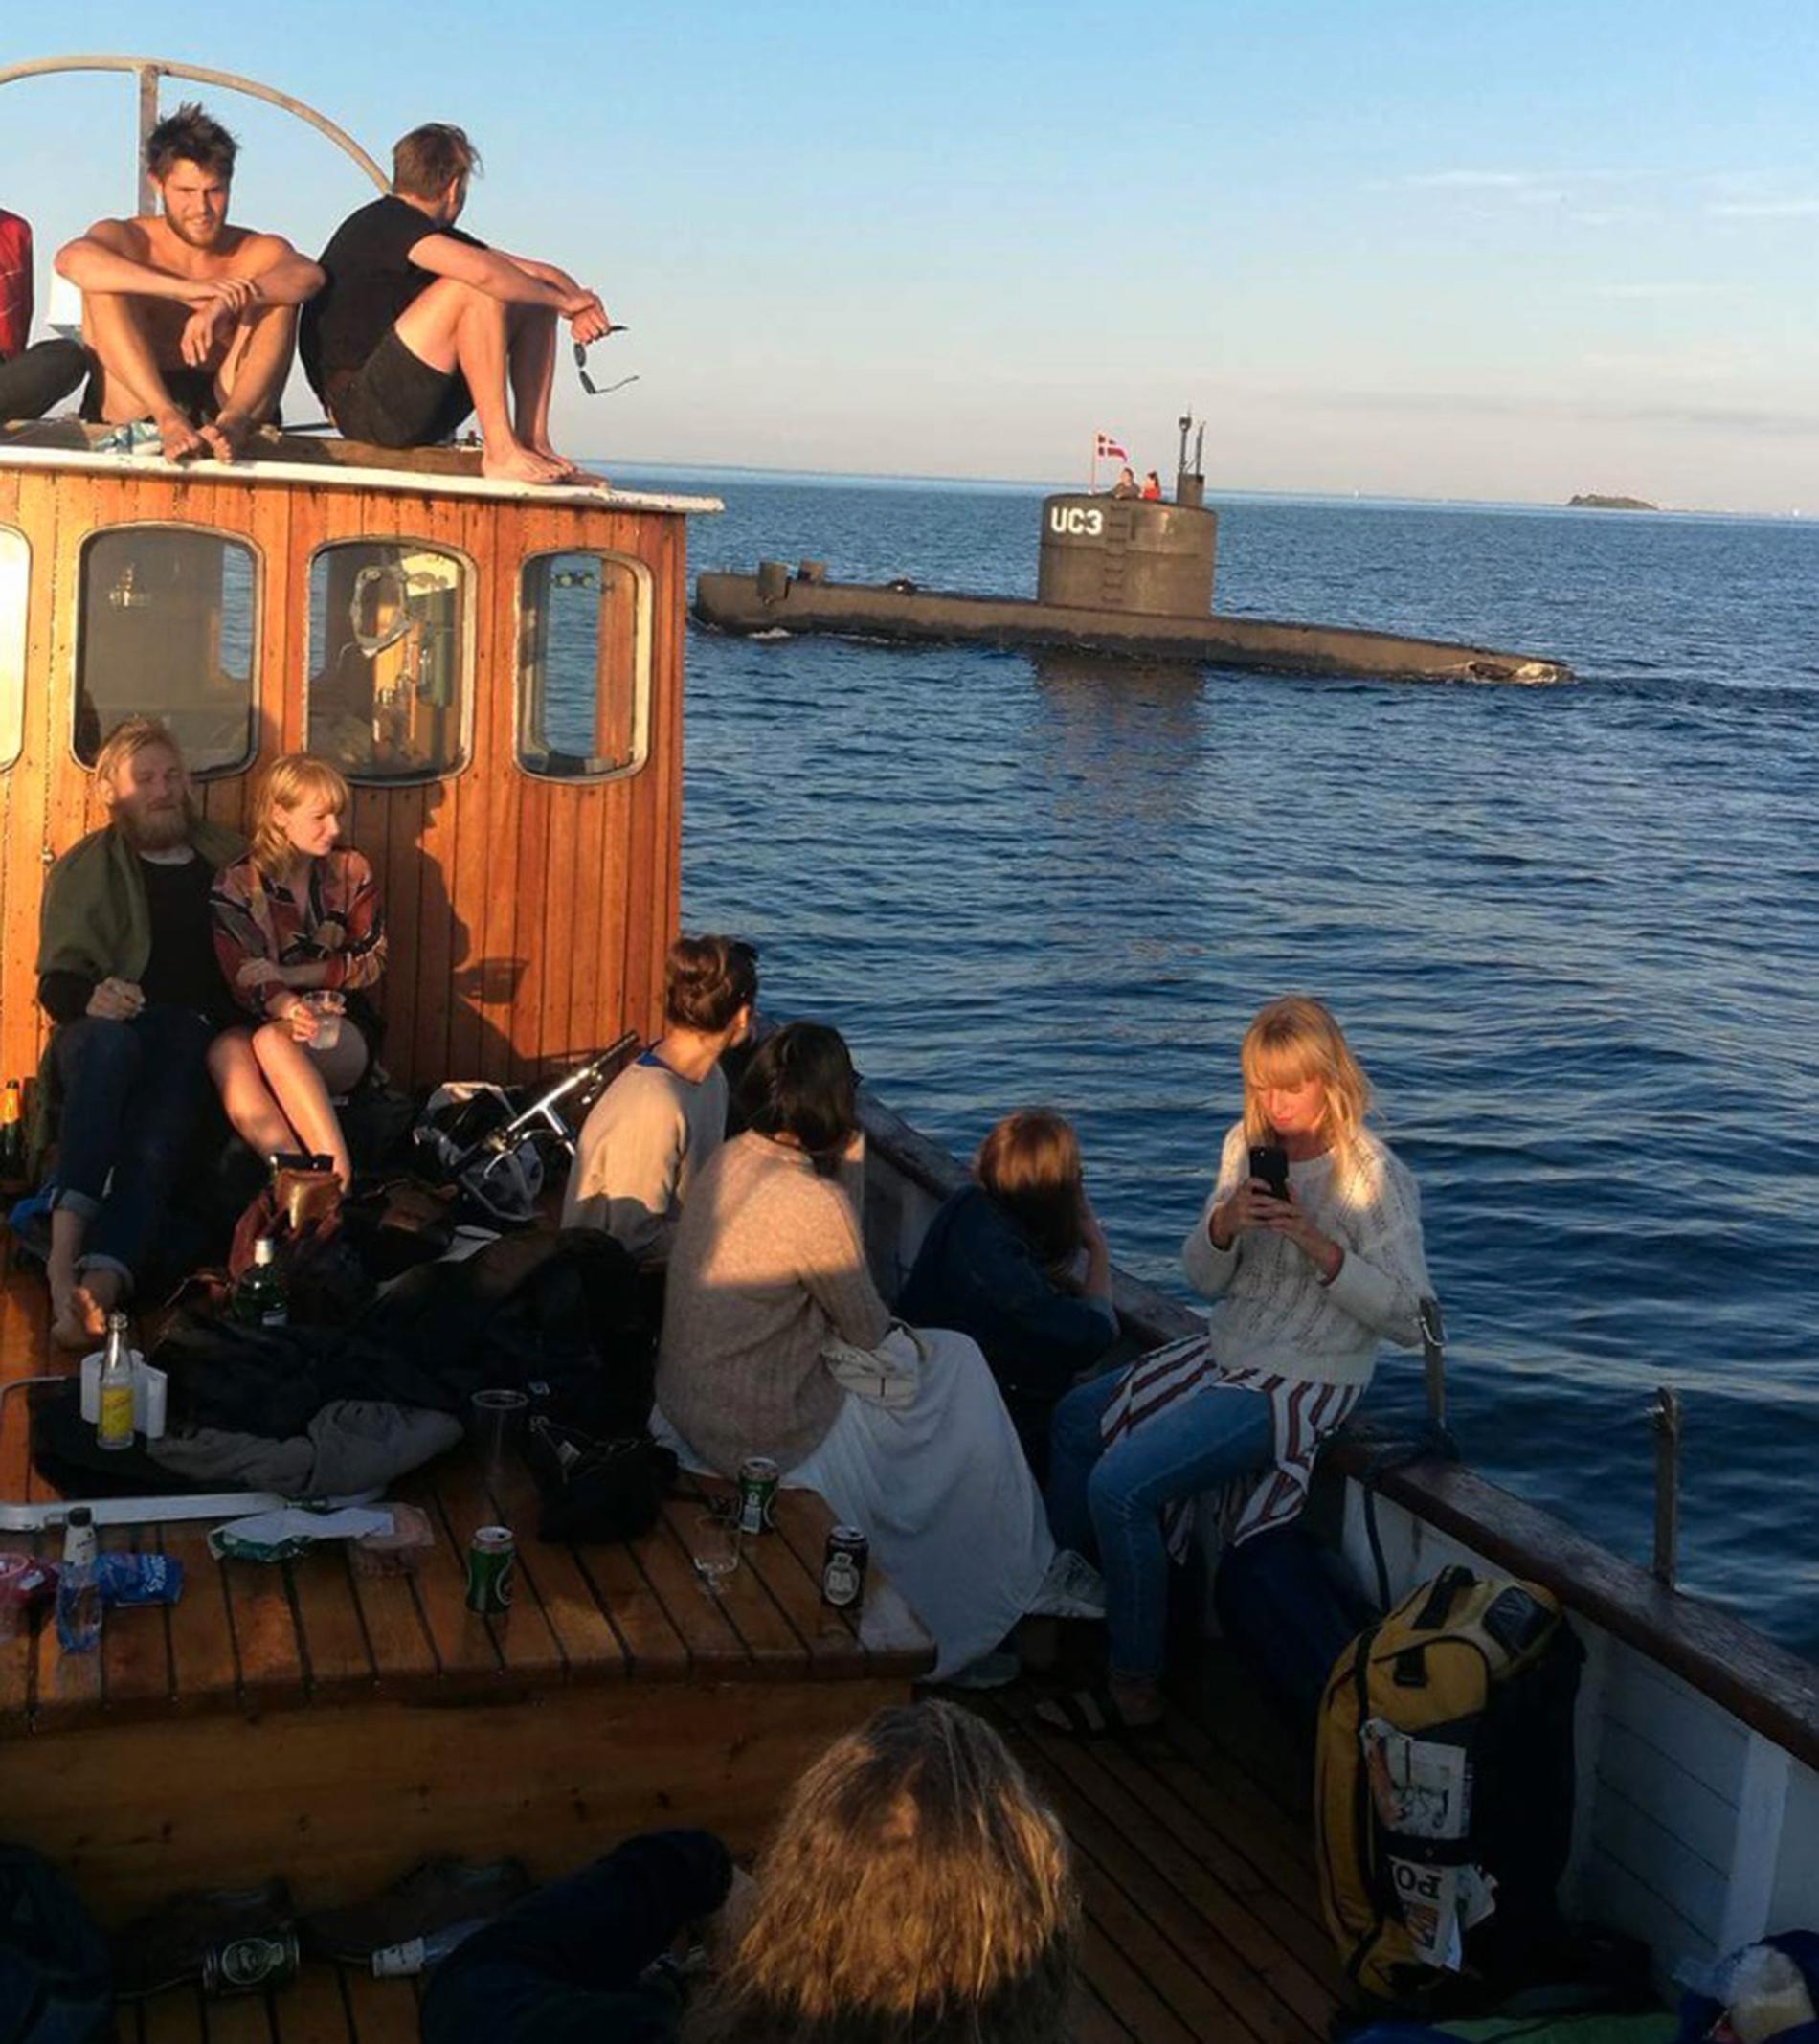 Johan Rasmussen arbetade på en födelsedagsfest på en båt när de stötte på ubåten.